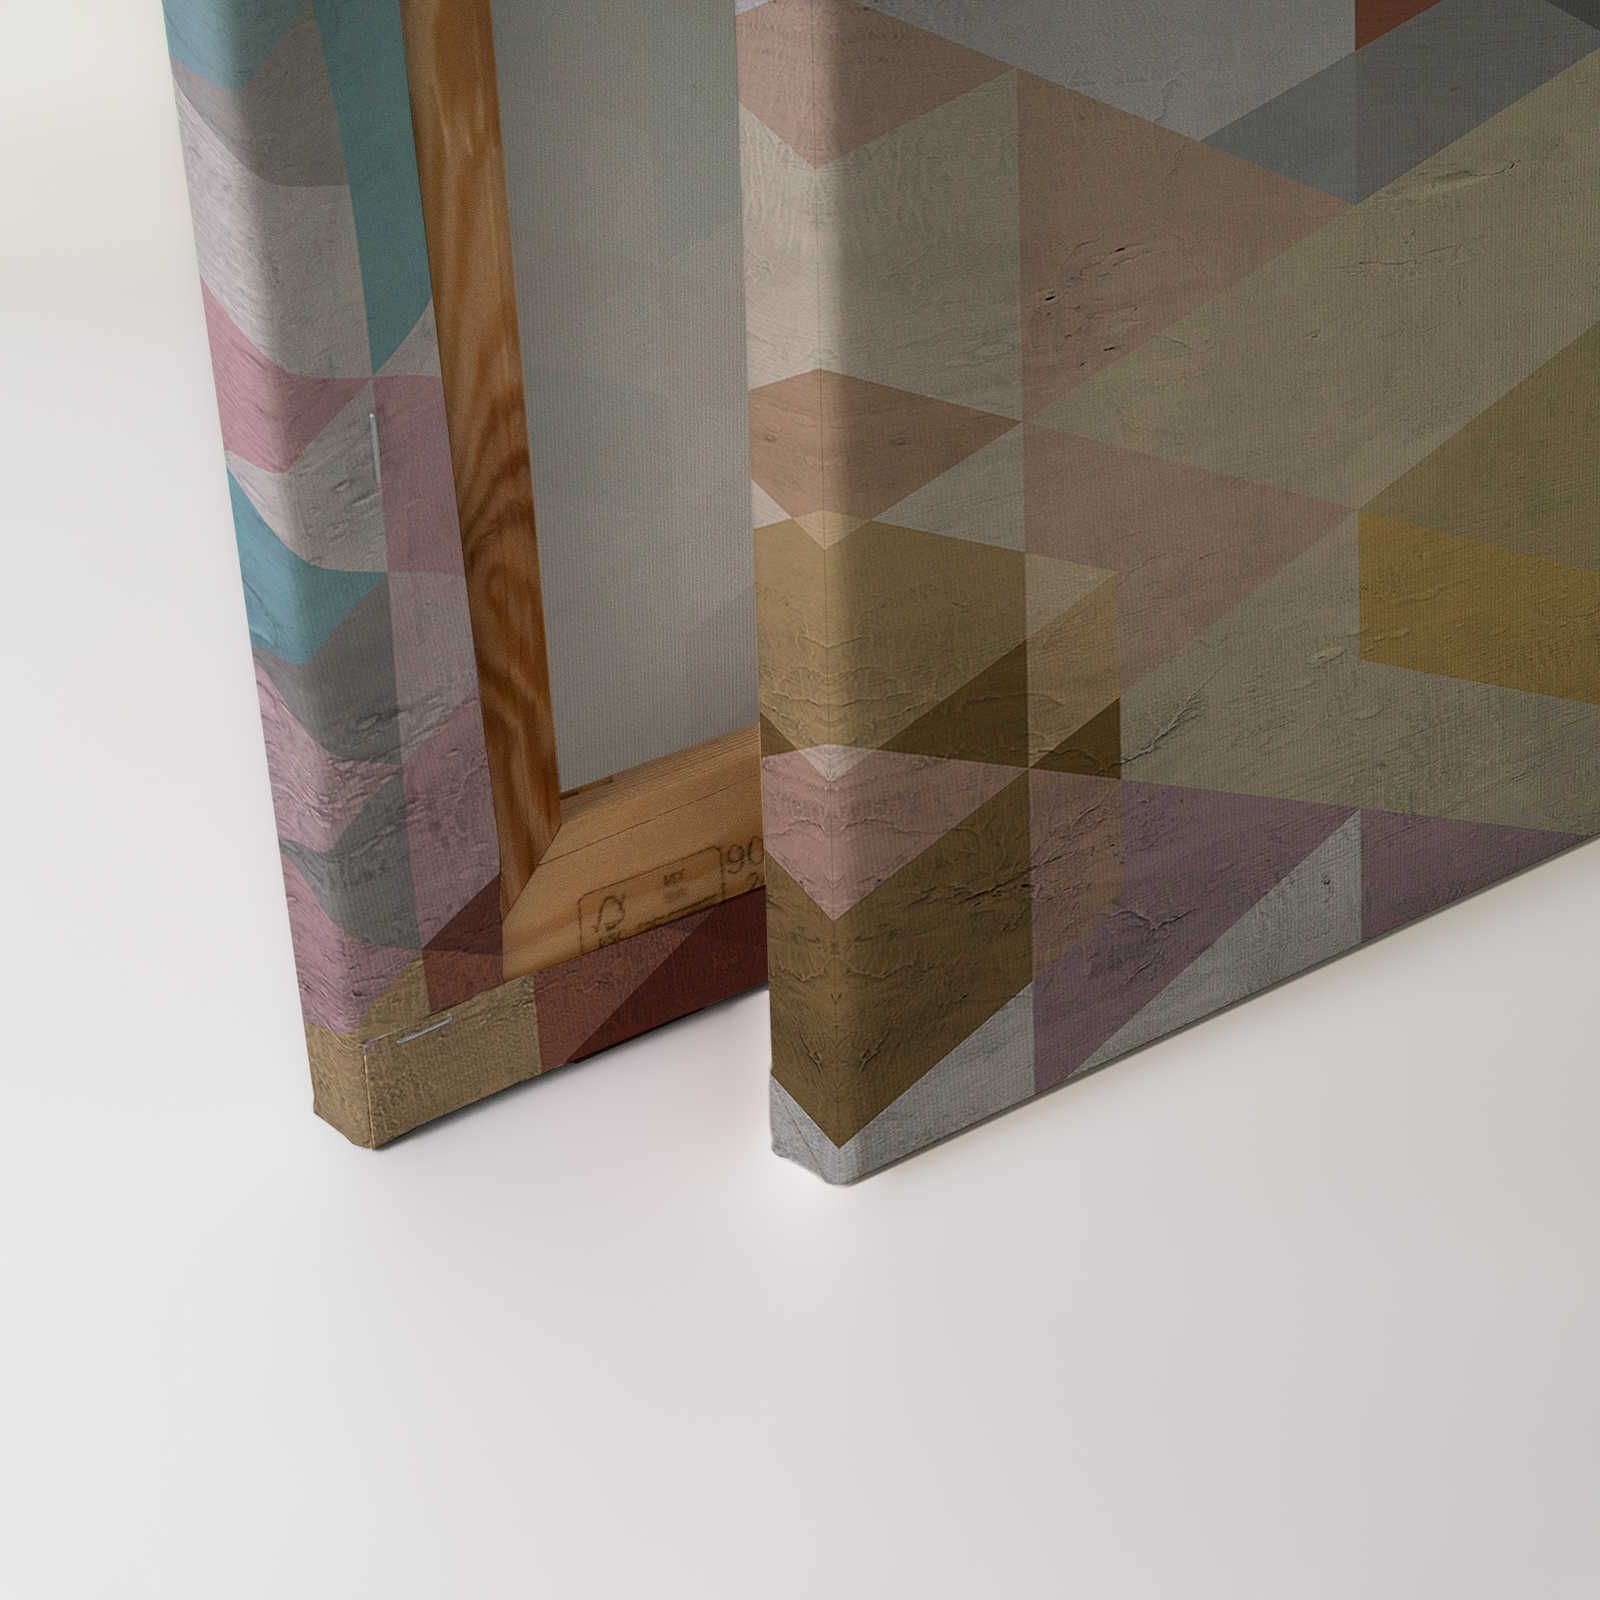             Tableau toile losanges, multicolore & géométrique, look usé - 1,20 m x 0,80 m
        